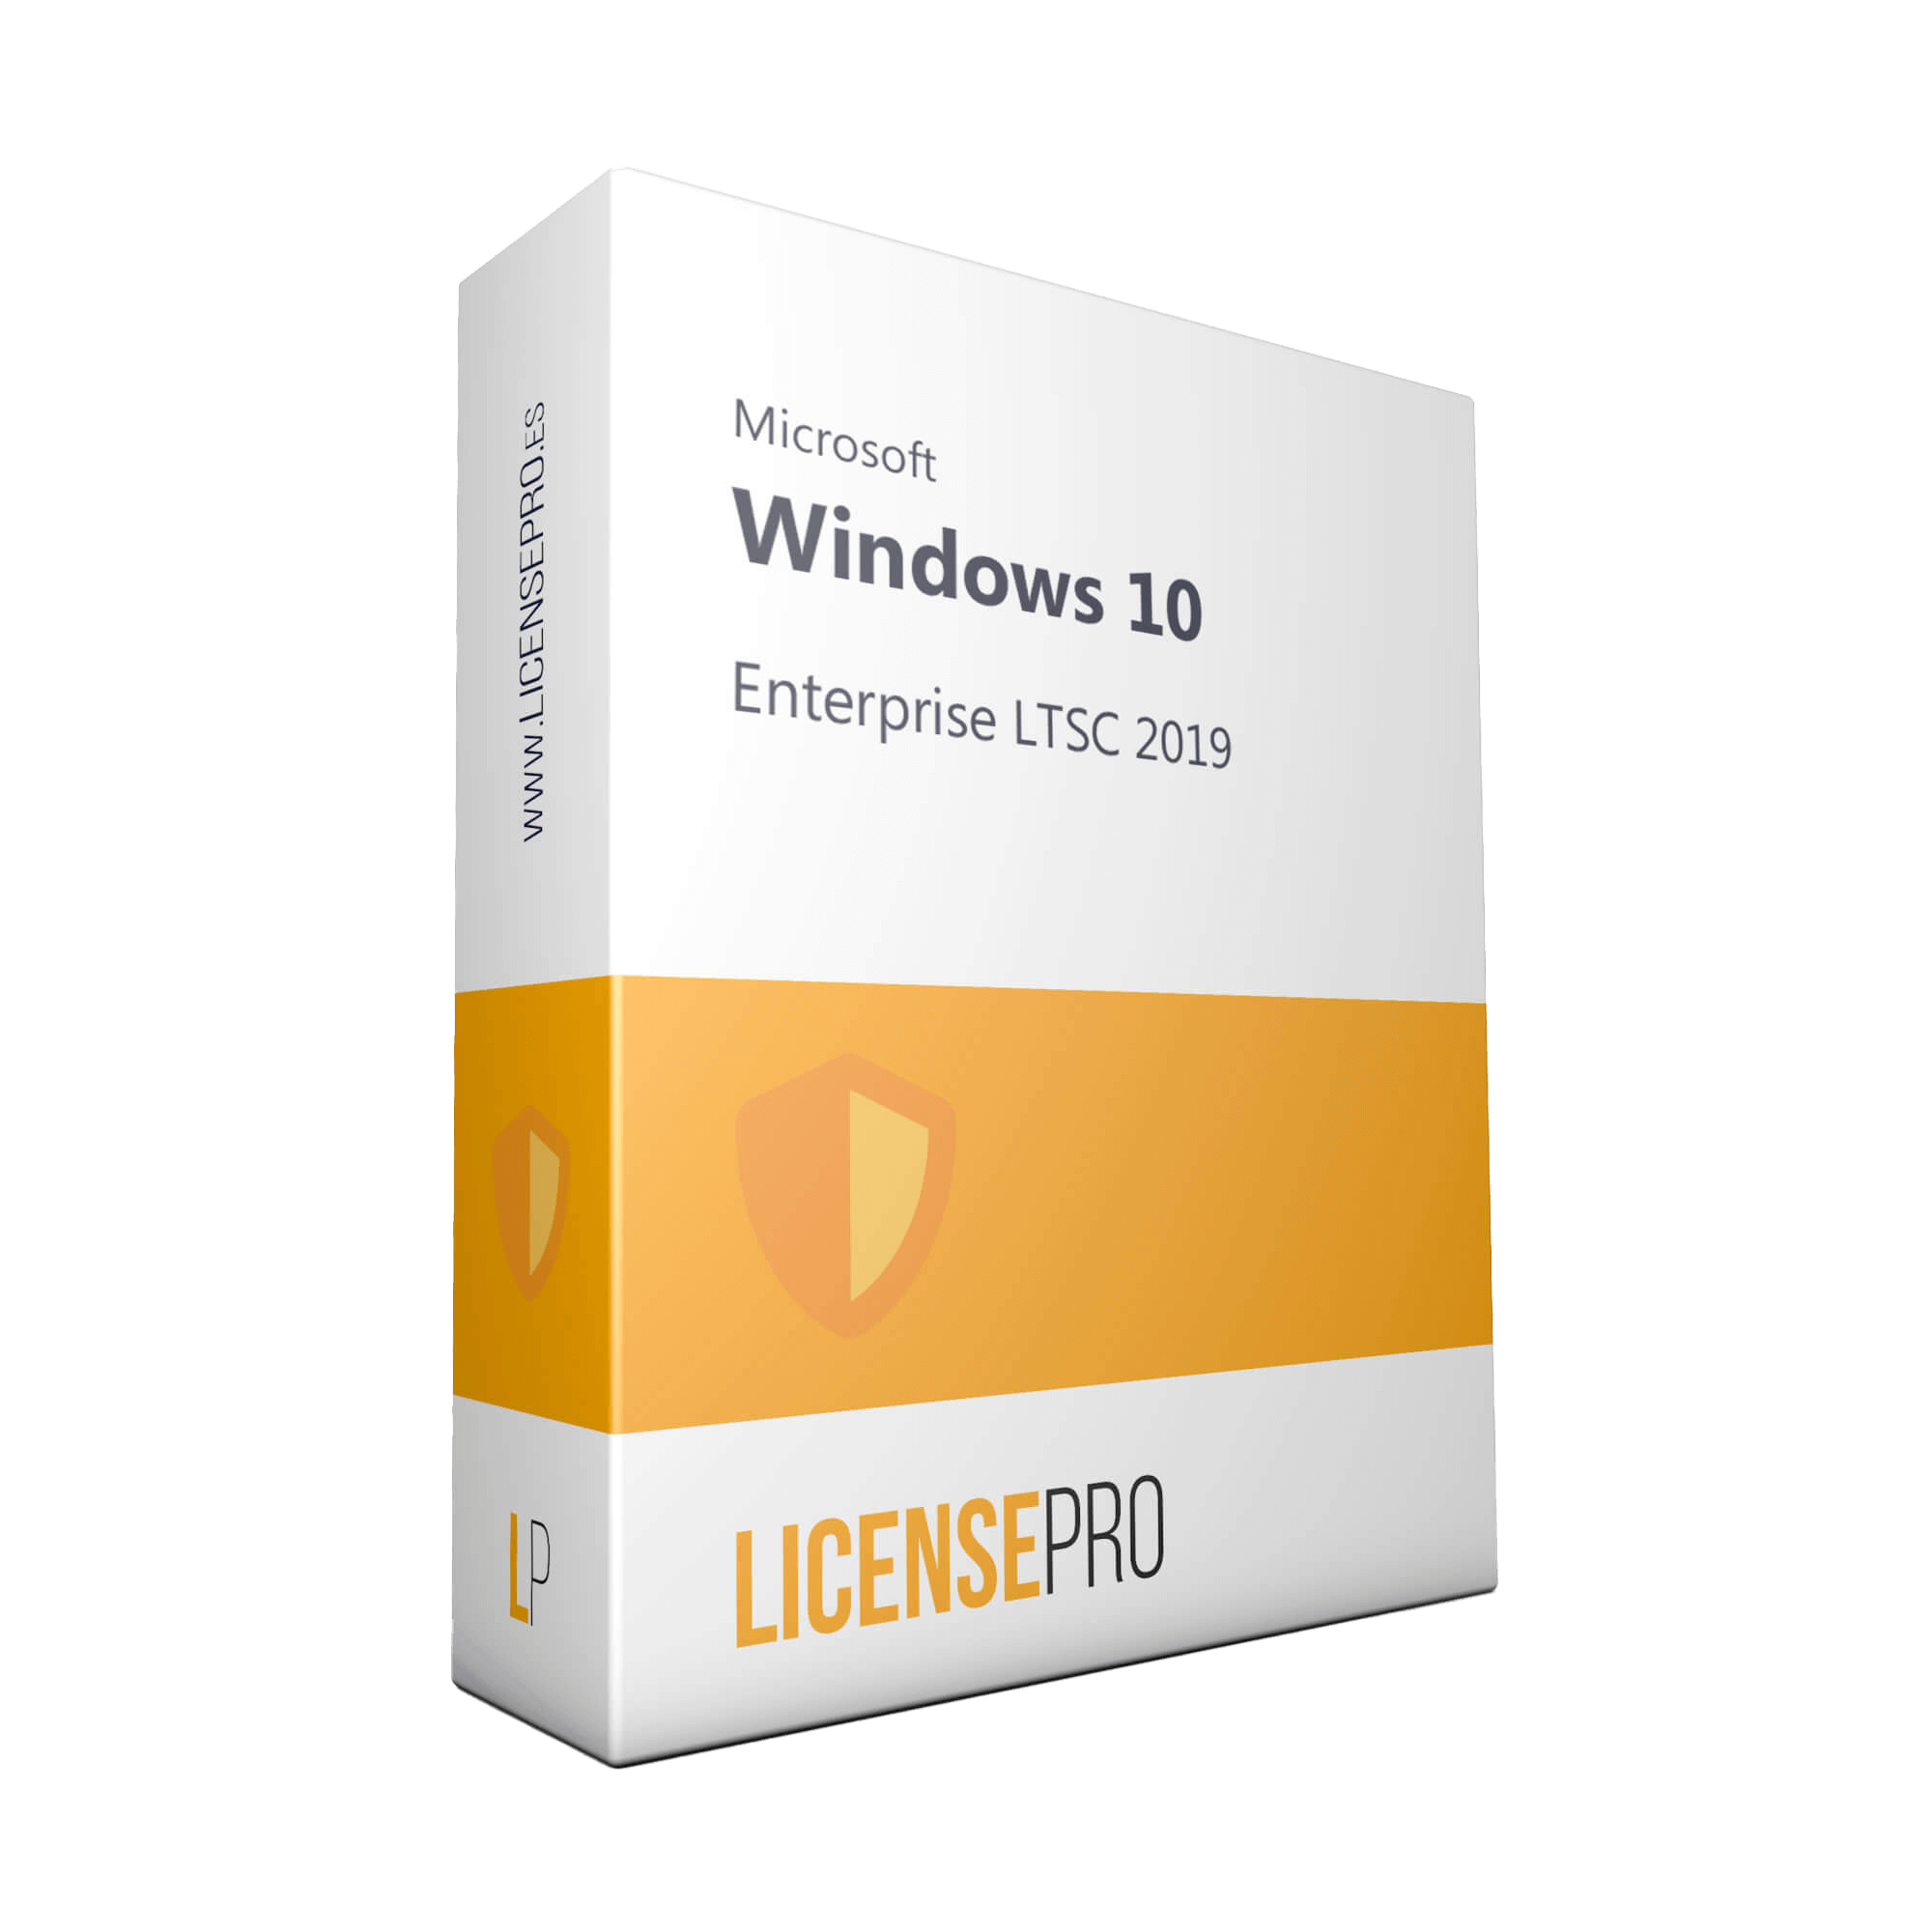 Microsoft Windows 10 Enterprise 2019 LTSC